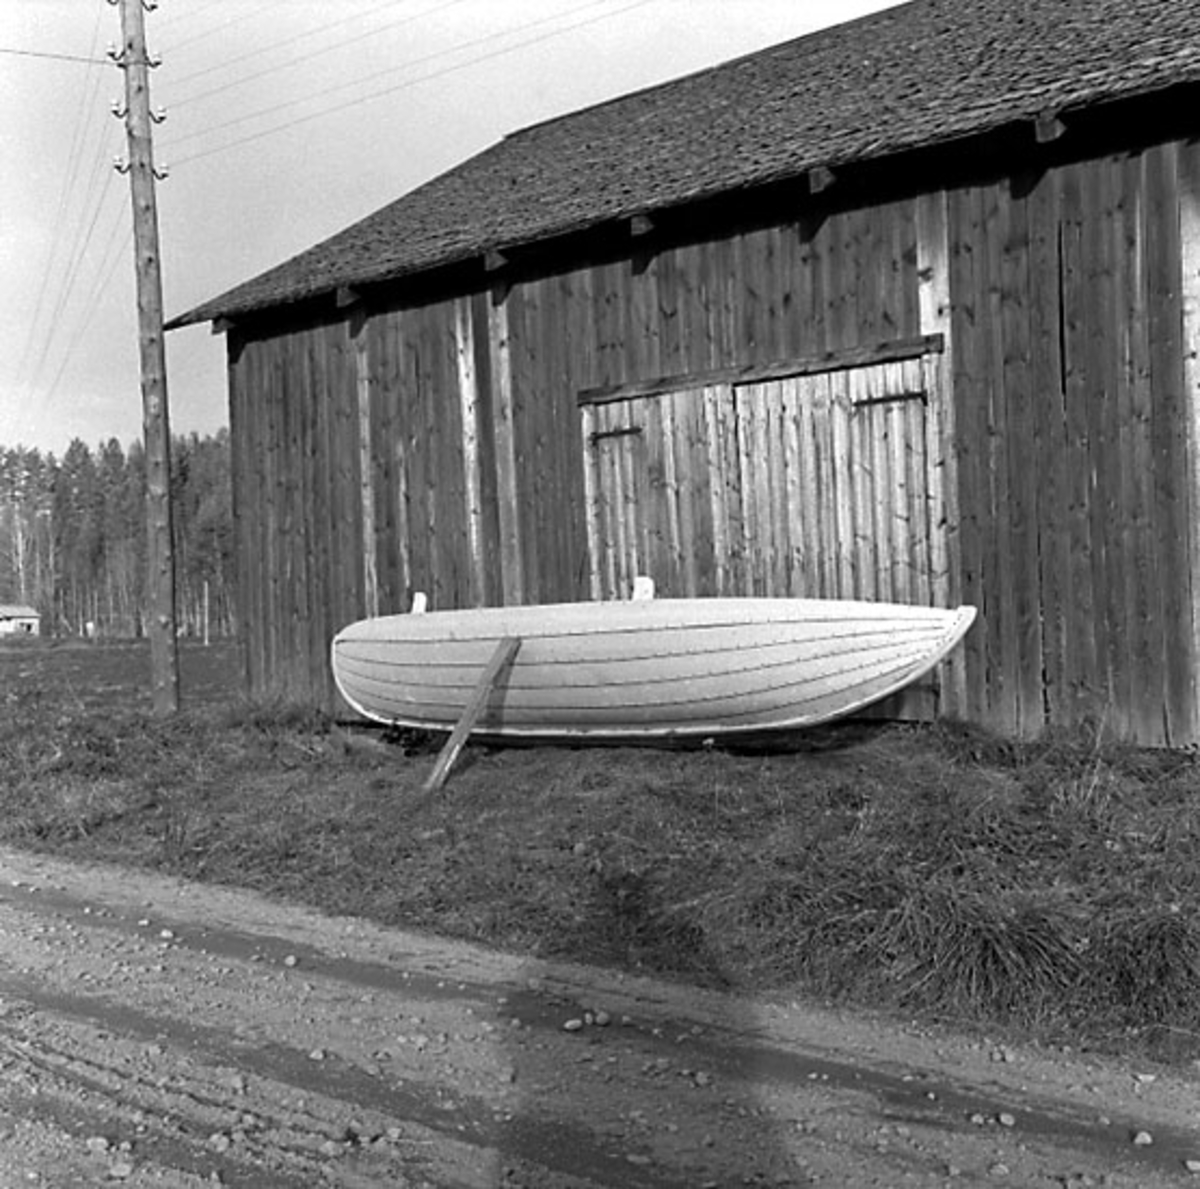 Fotografiet är taget: 1957

Båtbyggeri norra Sverige innehåller intreörer, 165 s.v. kop.
18 neg. till 18 av kop. finns i neg.ark. nr. 1929:1-2 filmnr. 119 och 120.
Format 6x6 10x10